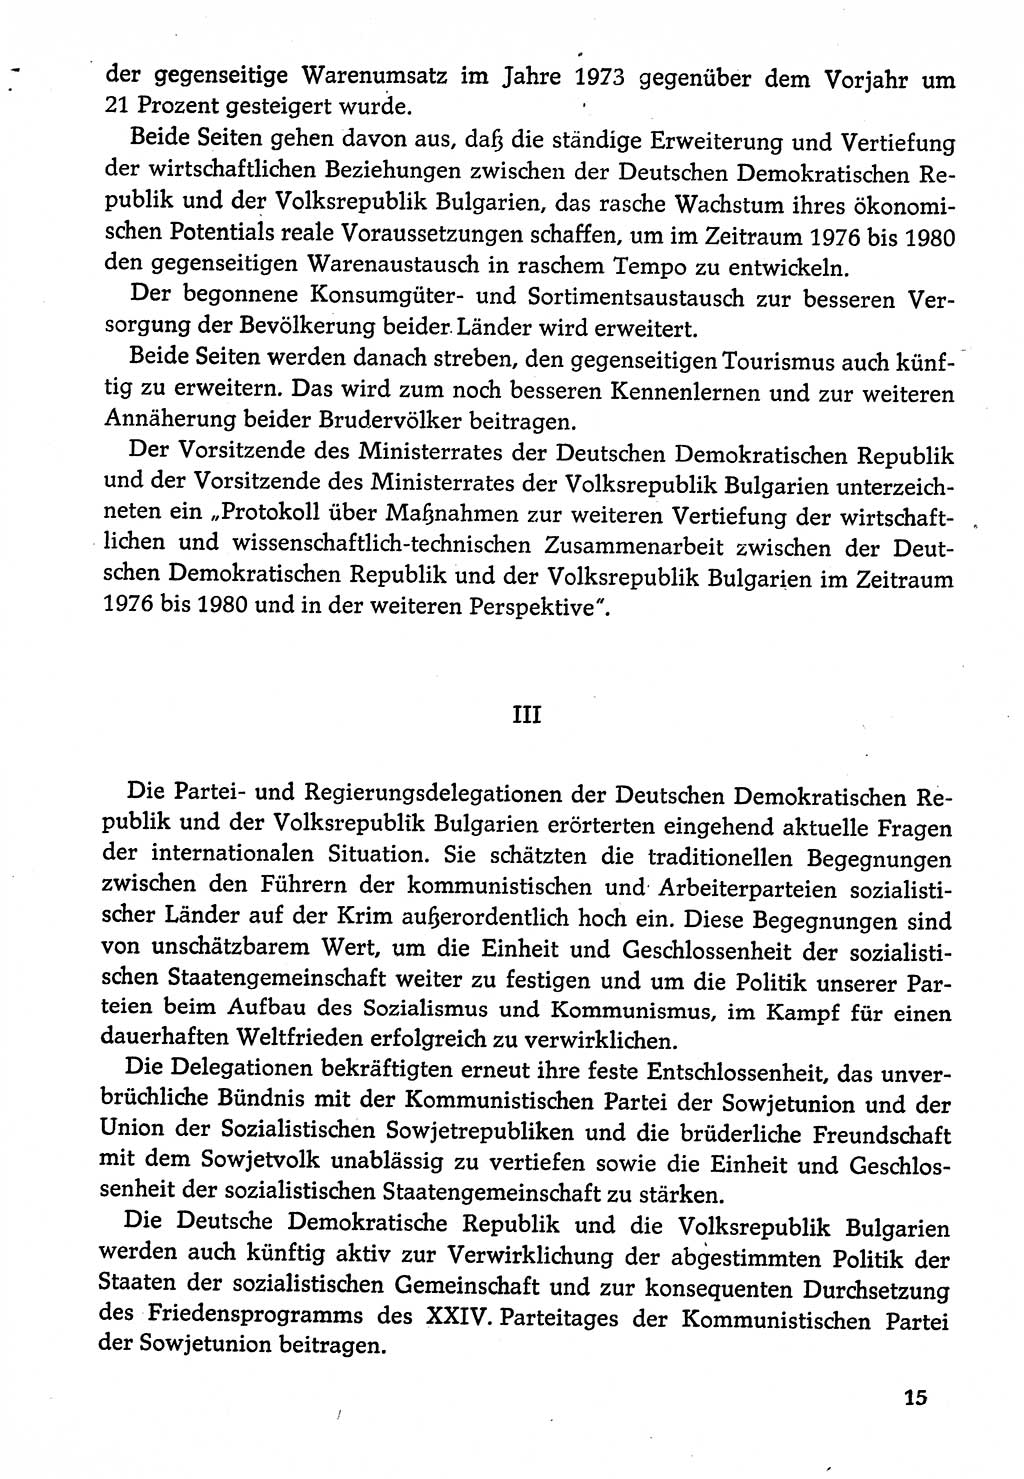 Dokumente der Sozialistischen Einheitspartei Deutschlands (SED) [Deutsche Demokratische Republik (DDR)] 1974-1975, Seite 15 (Dok. SED DDR 1978, Bd. ⅩⅤ, S. 15)